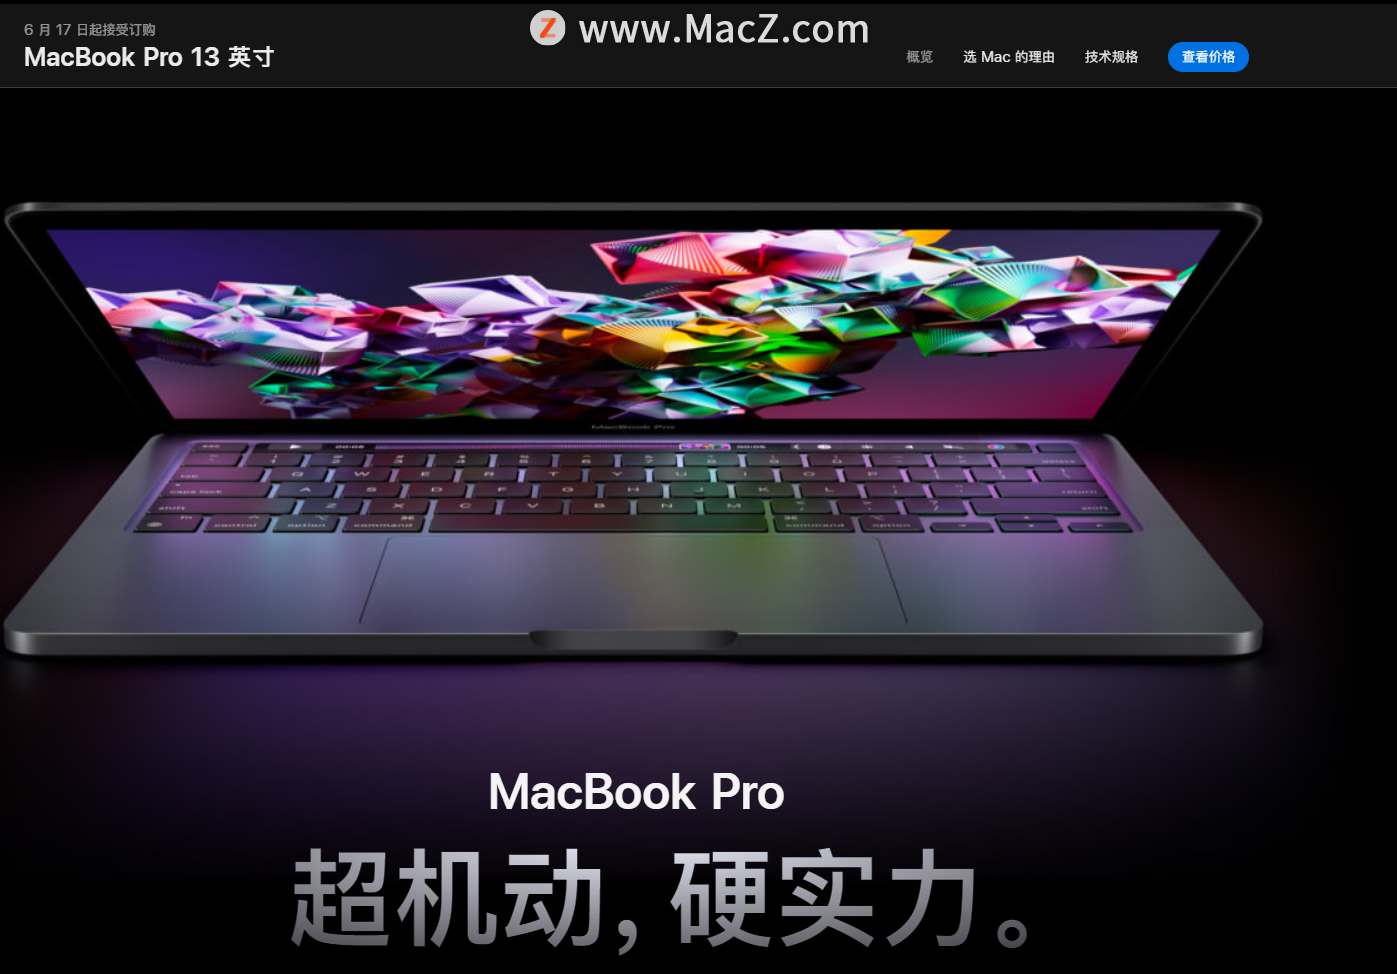 苹果在13英寸MacBook Pro 发布之前发布适用于M2 Mac的macOS Monterey 12.4 新版本